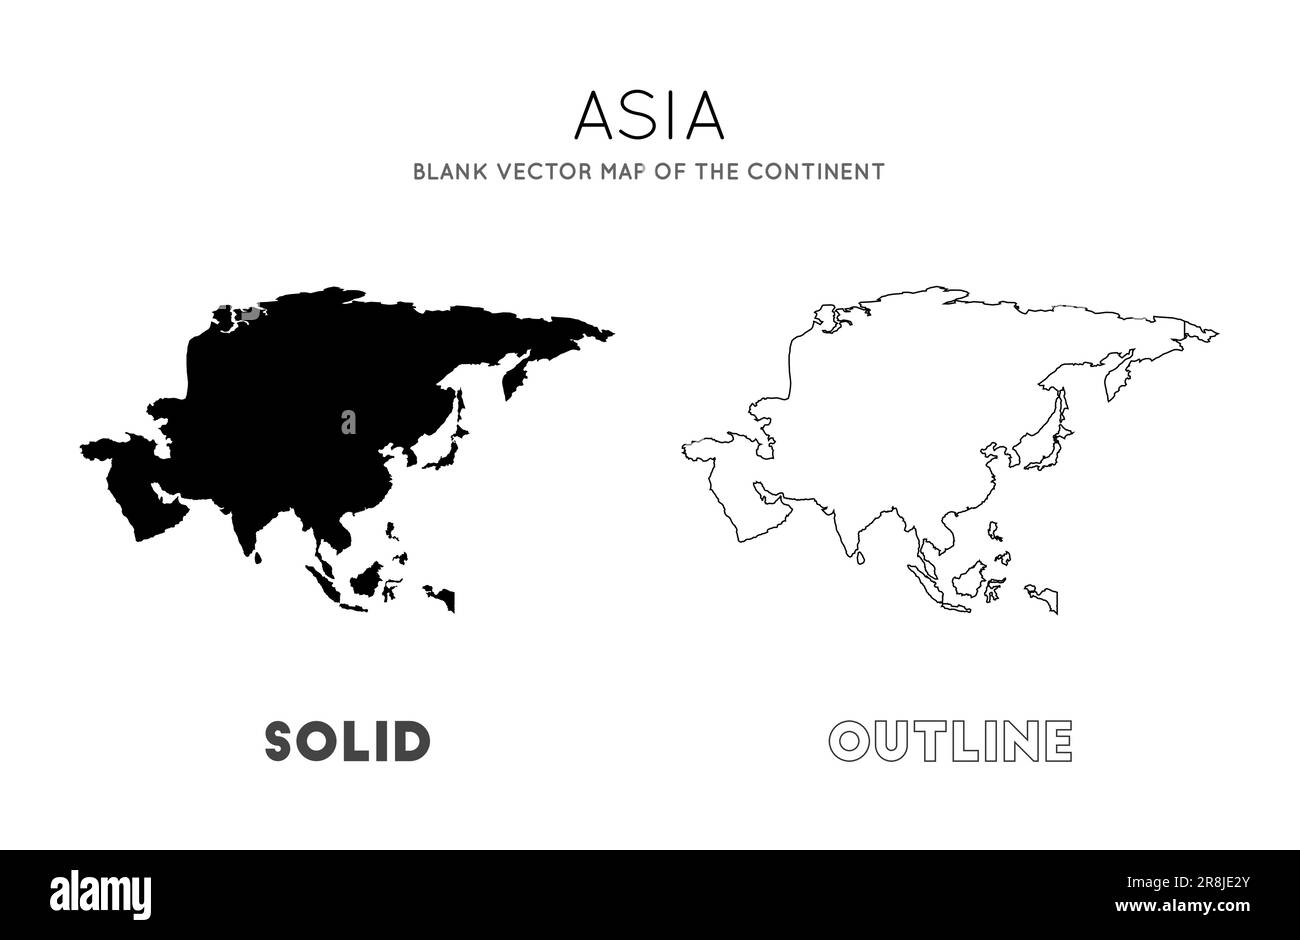 Asiatische Karte. Leere Vektorkarte des Kontinents. Borders of Asia für Ihre Infografik. Vektordarstellung. Stock Vektor